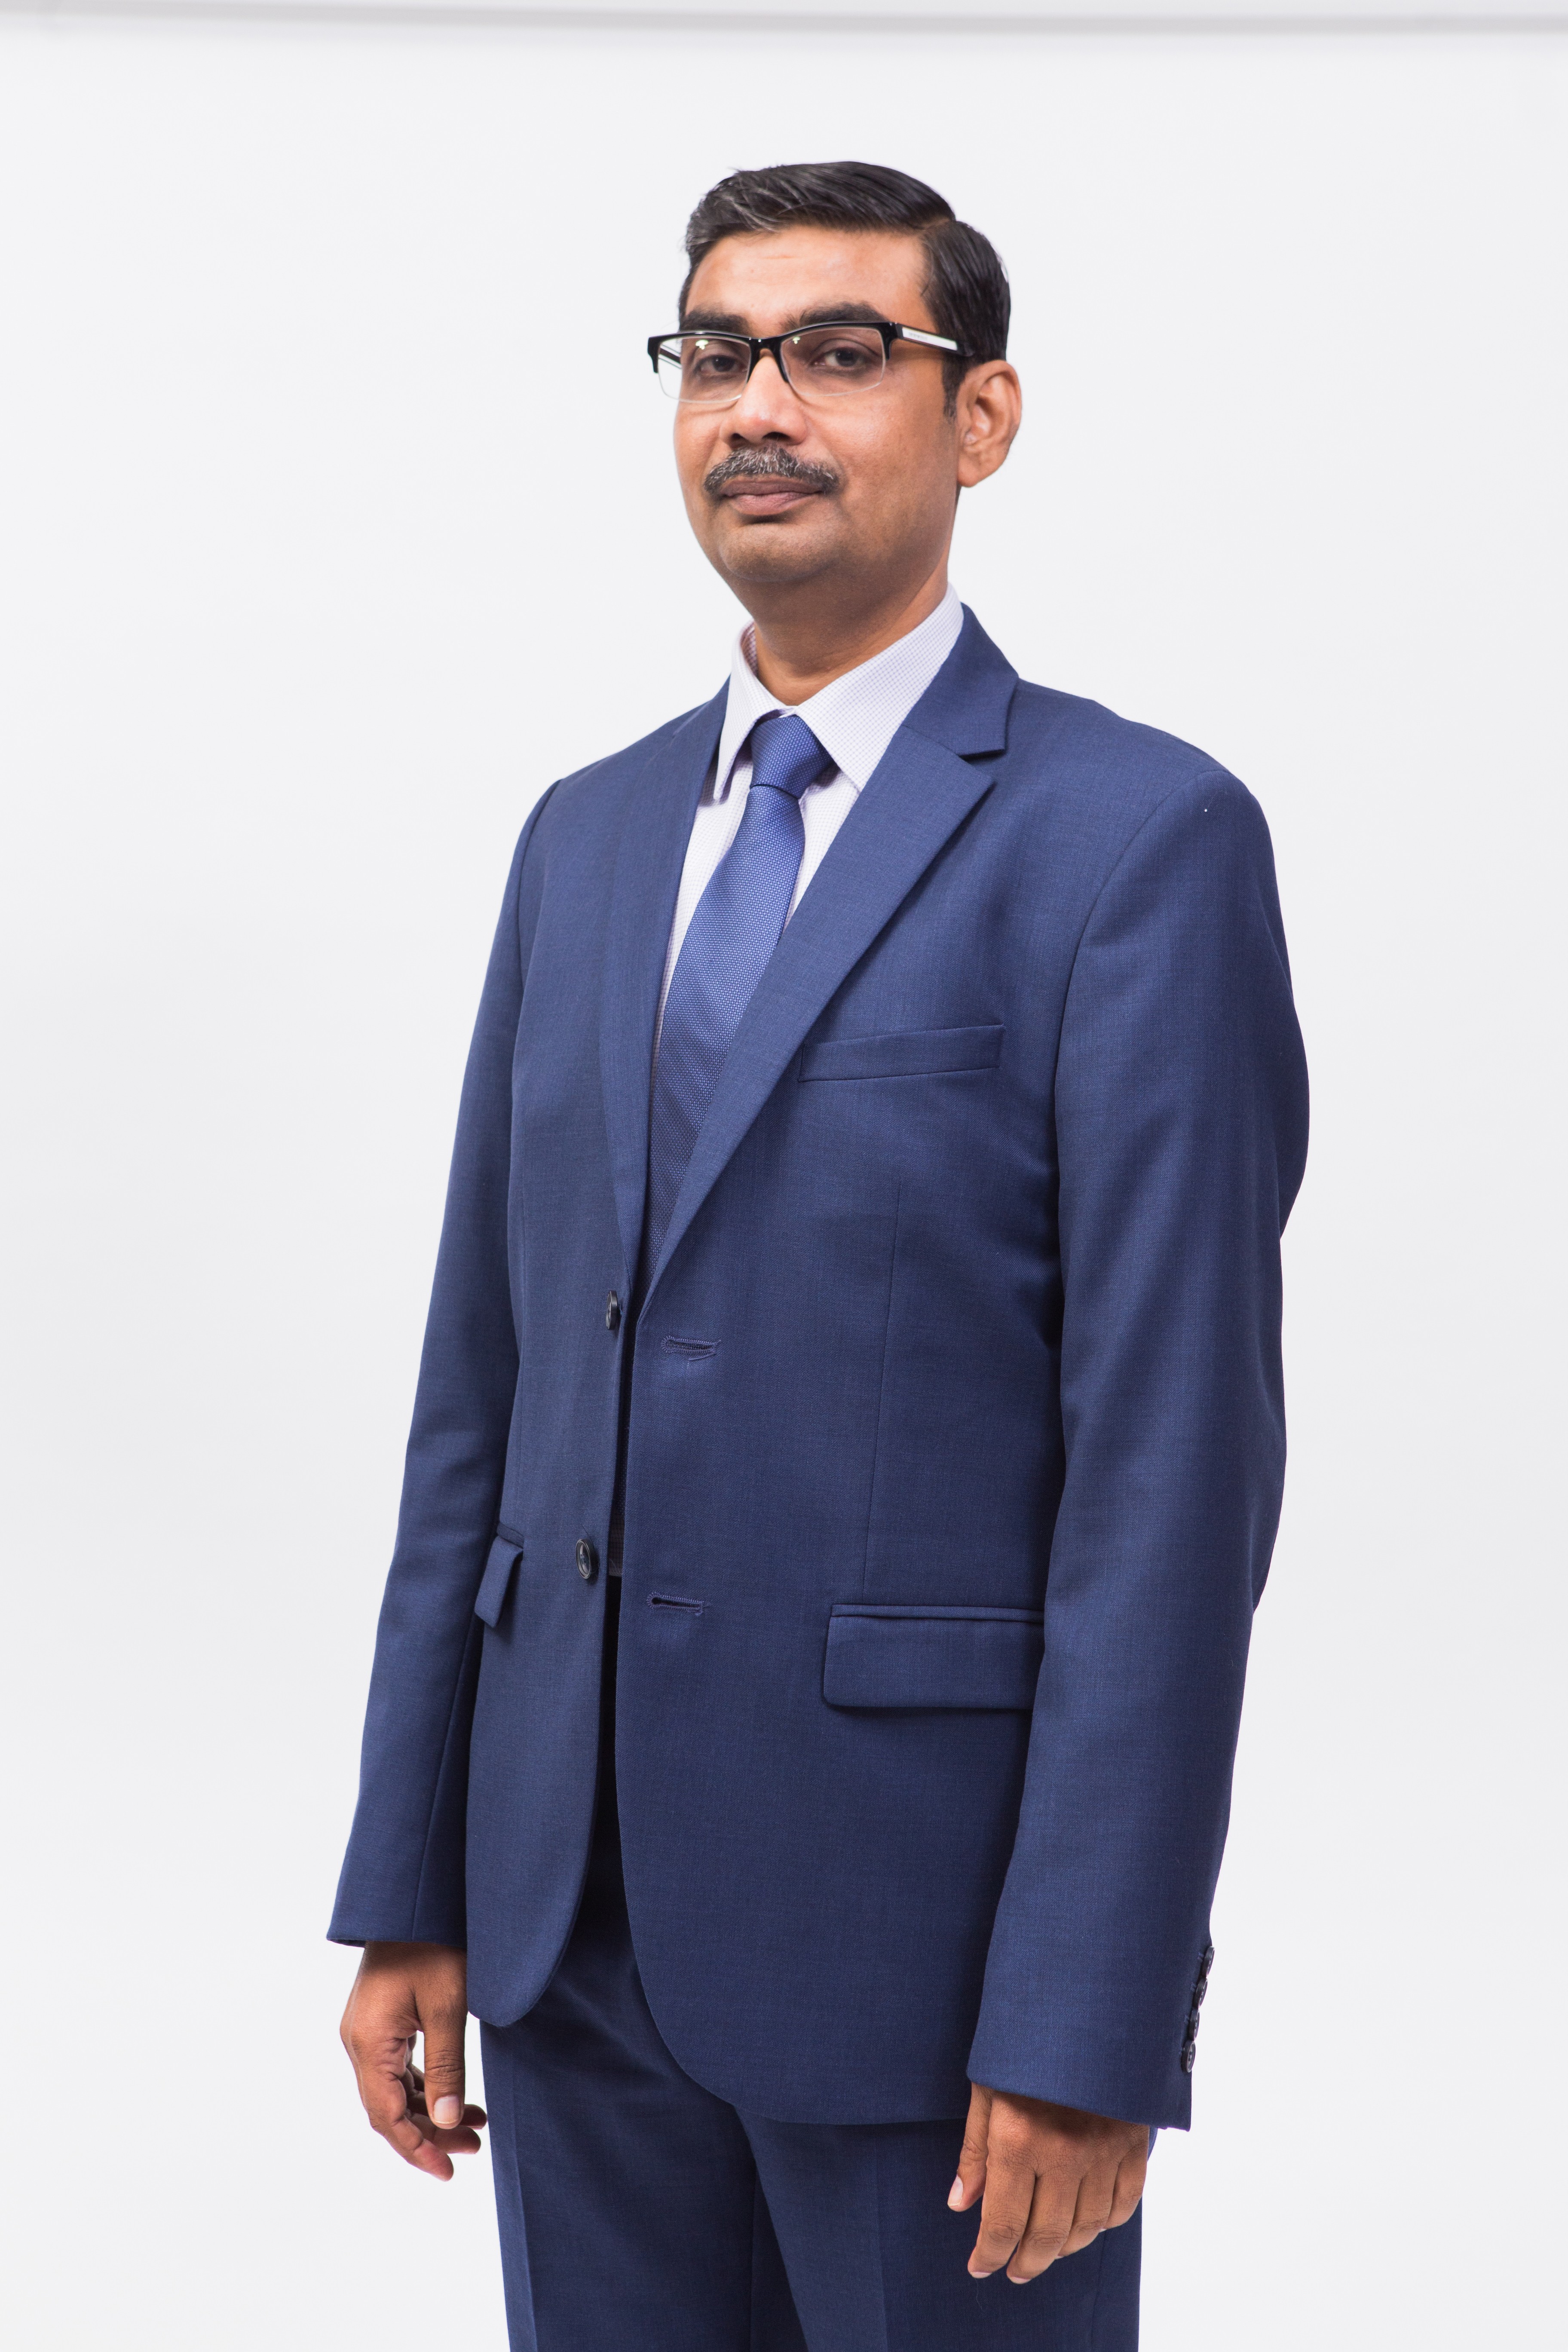 Amit Prakash, CEO